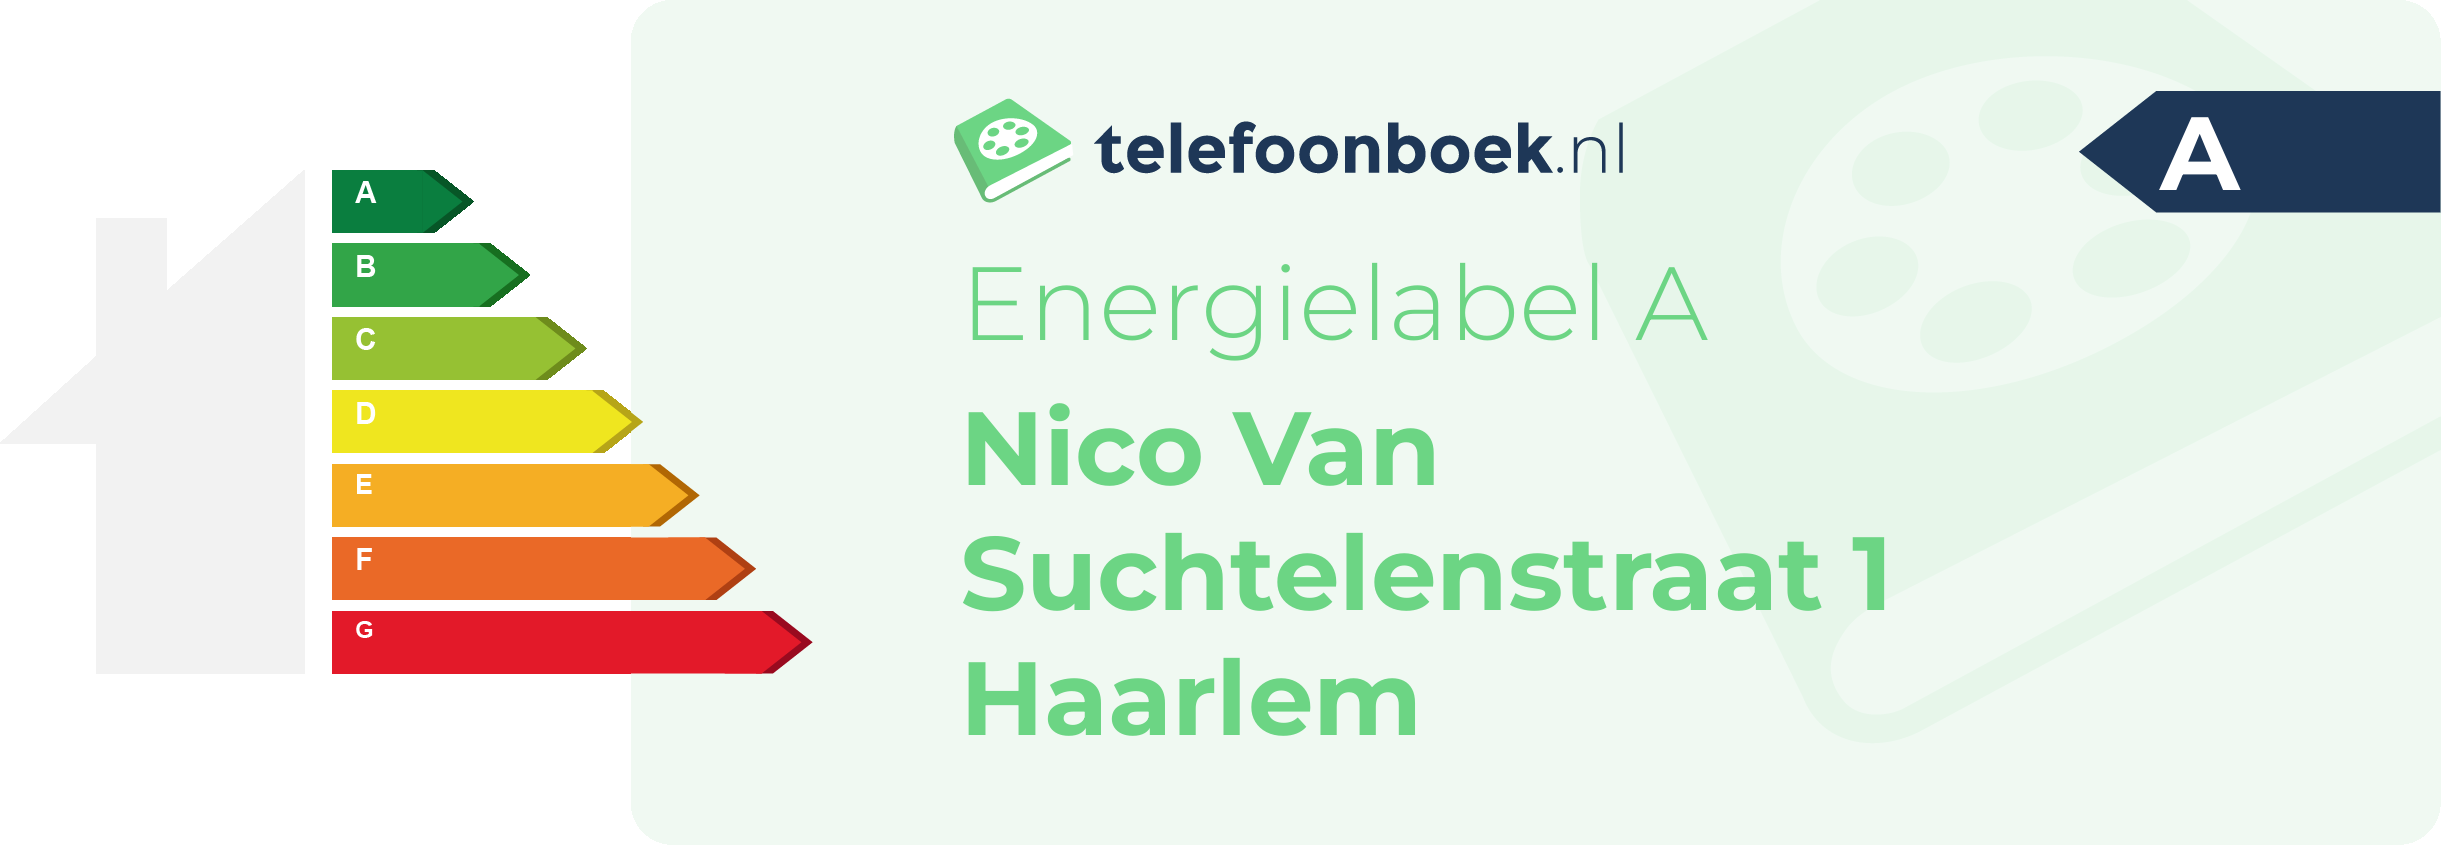 Energielabel Nico Van Suchtelenstraat 1 Haarlem